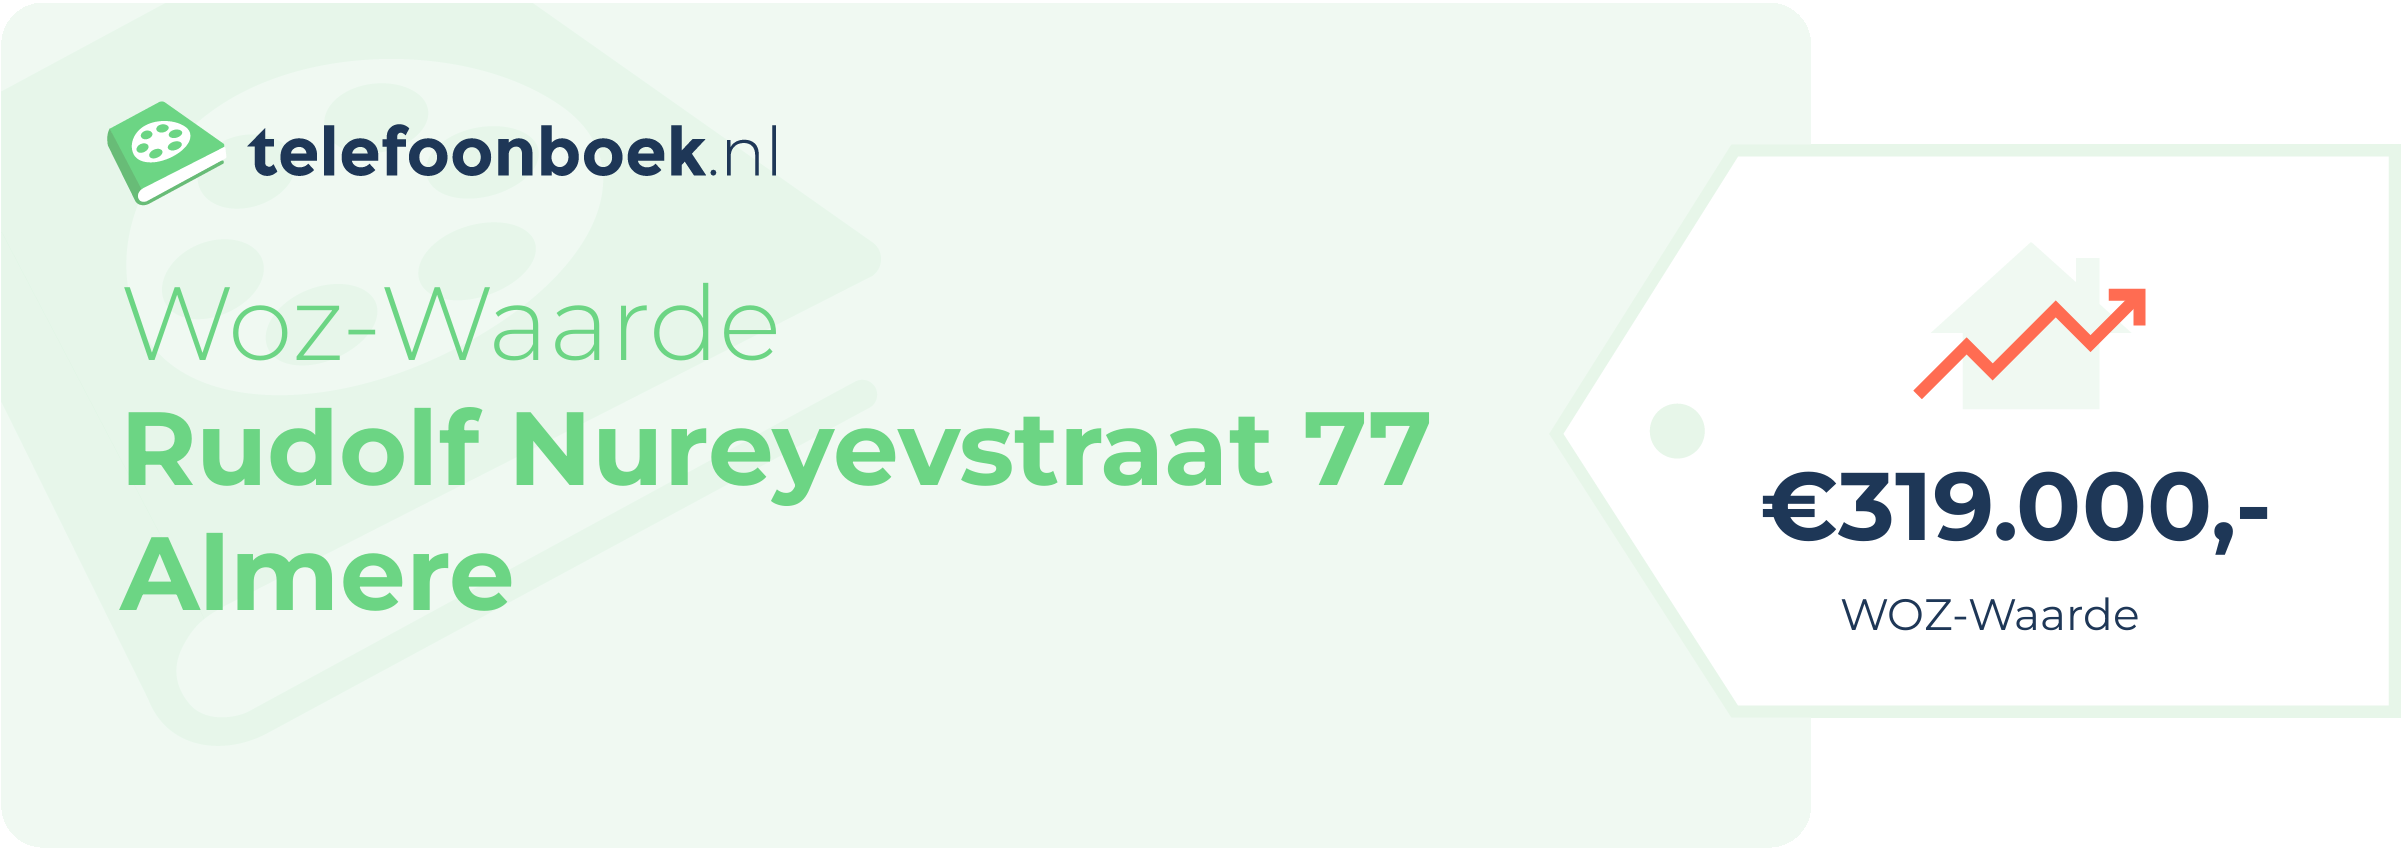 WOZ-waarde Rudolf Nureyevstraat 77 Almere